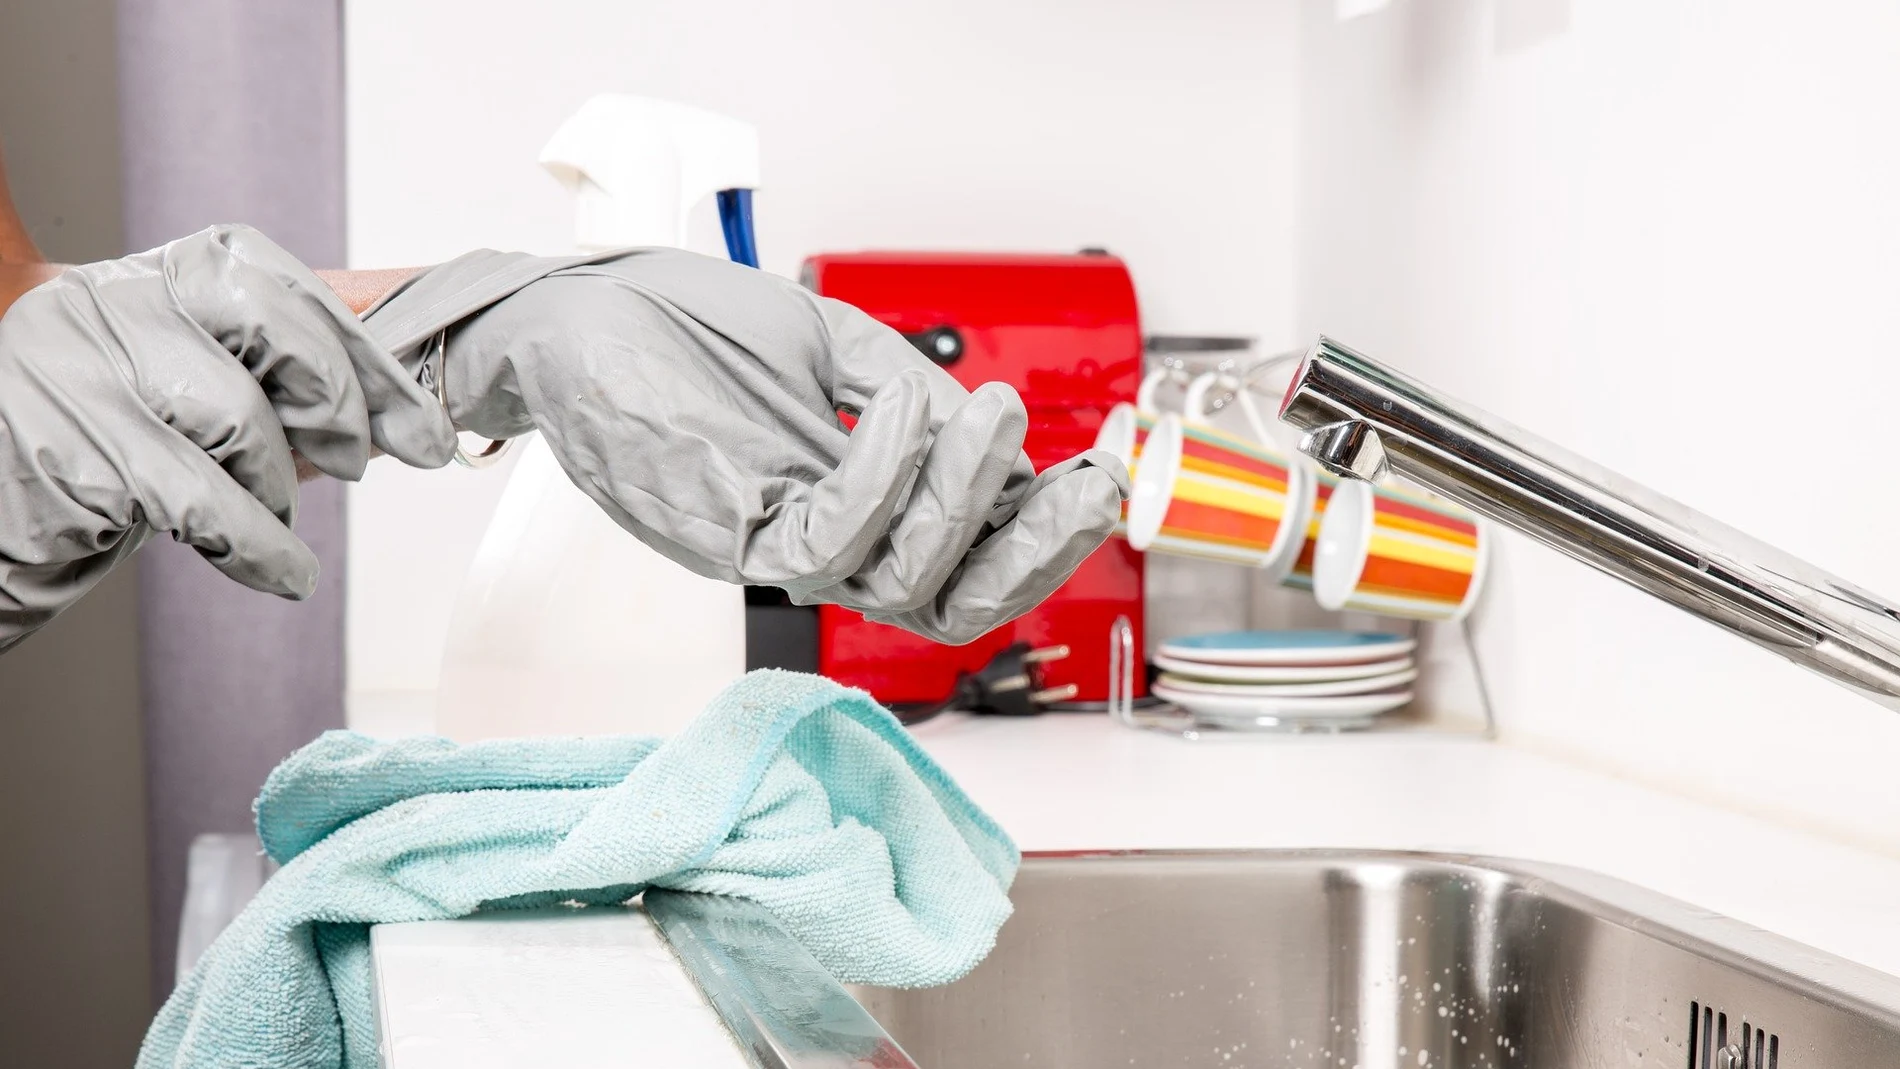 Productos de higiene para desinfectar y limpiar bien toda la casa